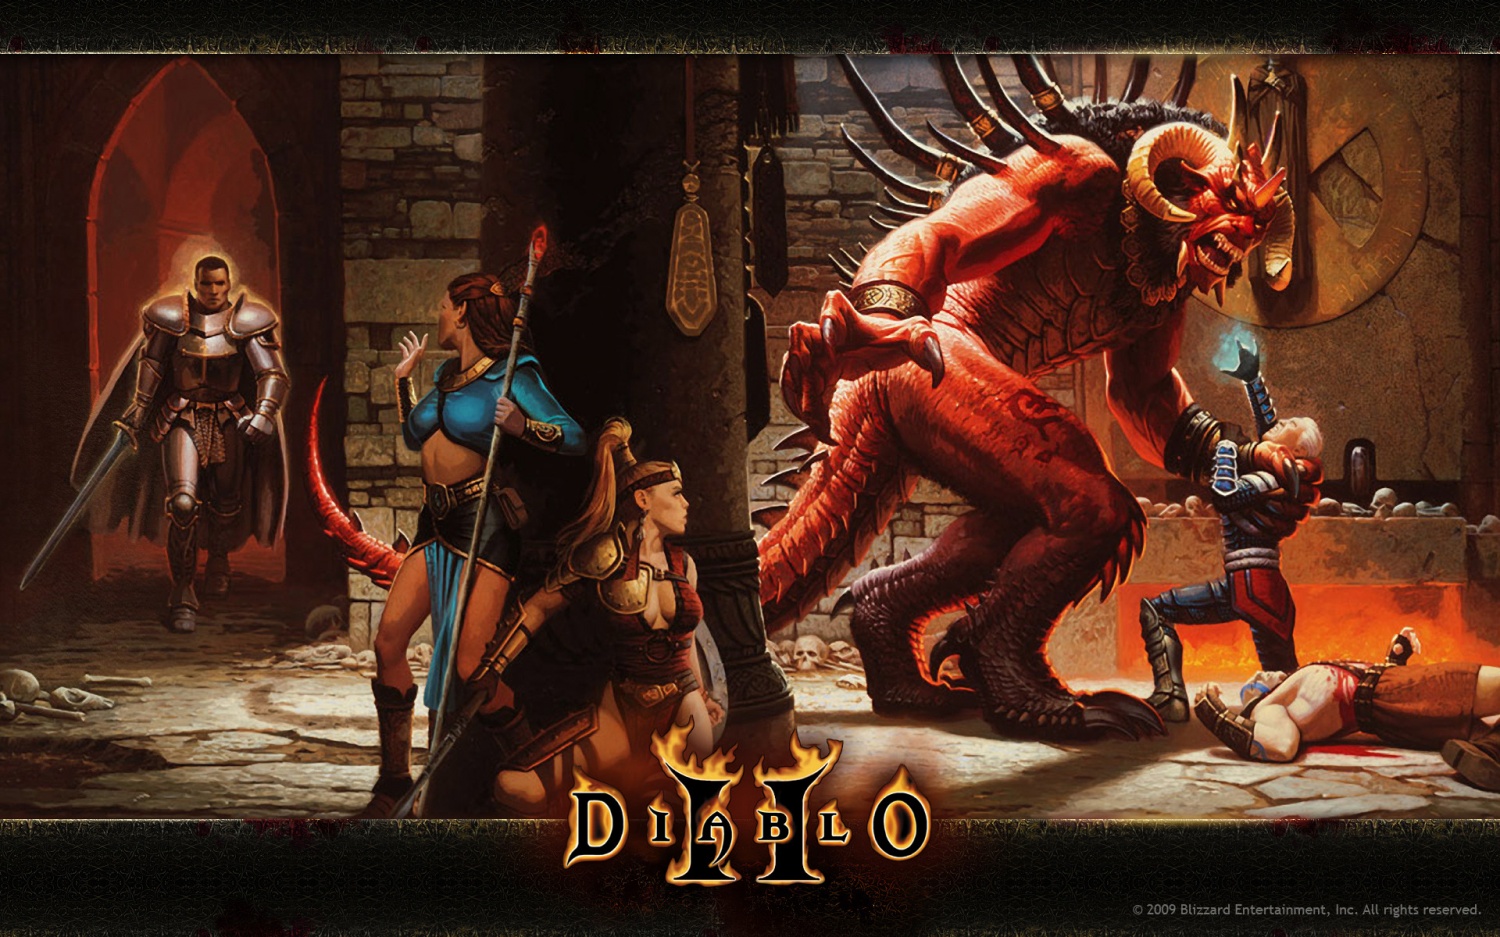 [RETRO GAMING] Remember Diablo II?